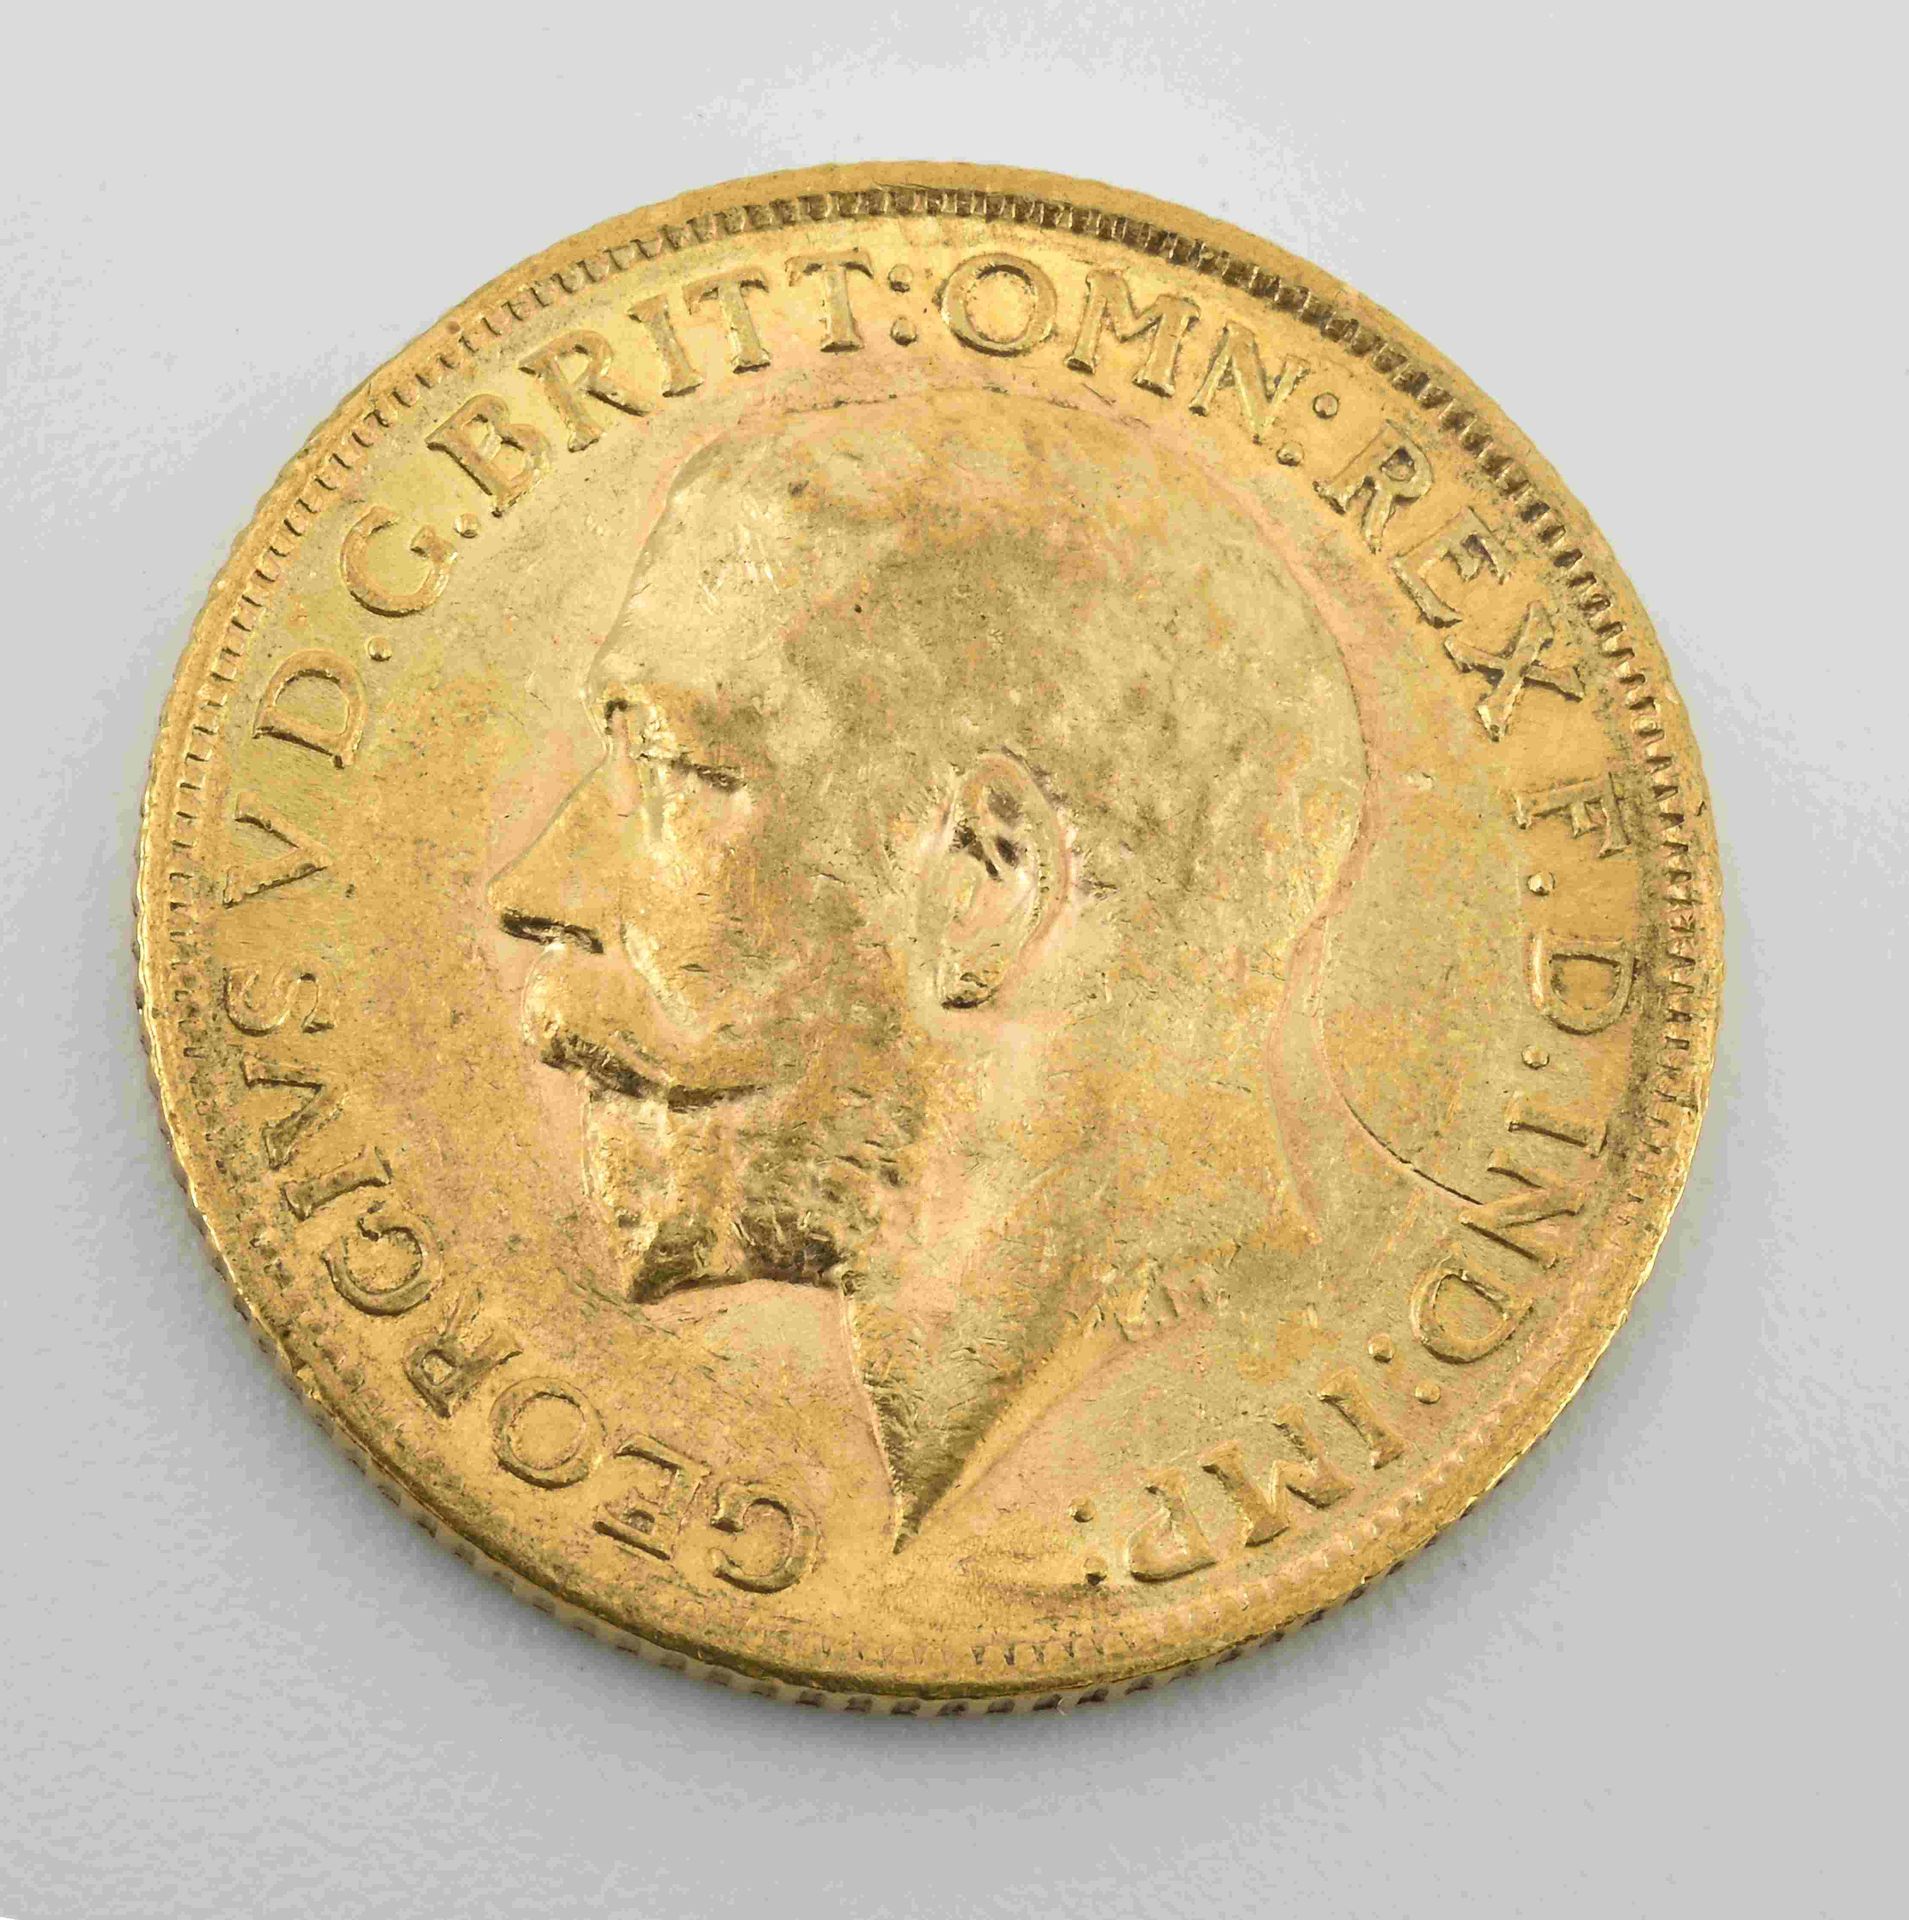 Null Souverän Georg V 1914 aus Gold 916°°
Schöner Zustand. PN: 7,97 g.
Gut überg&hellip;